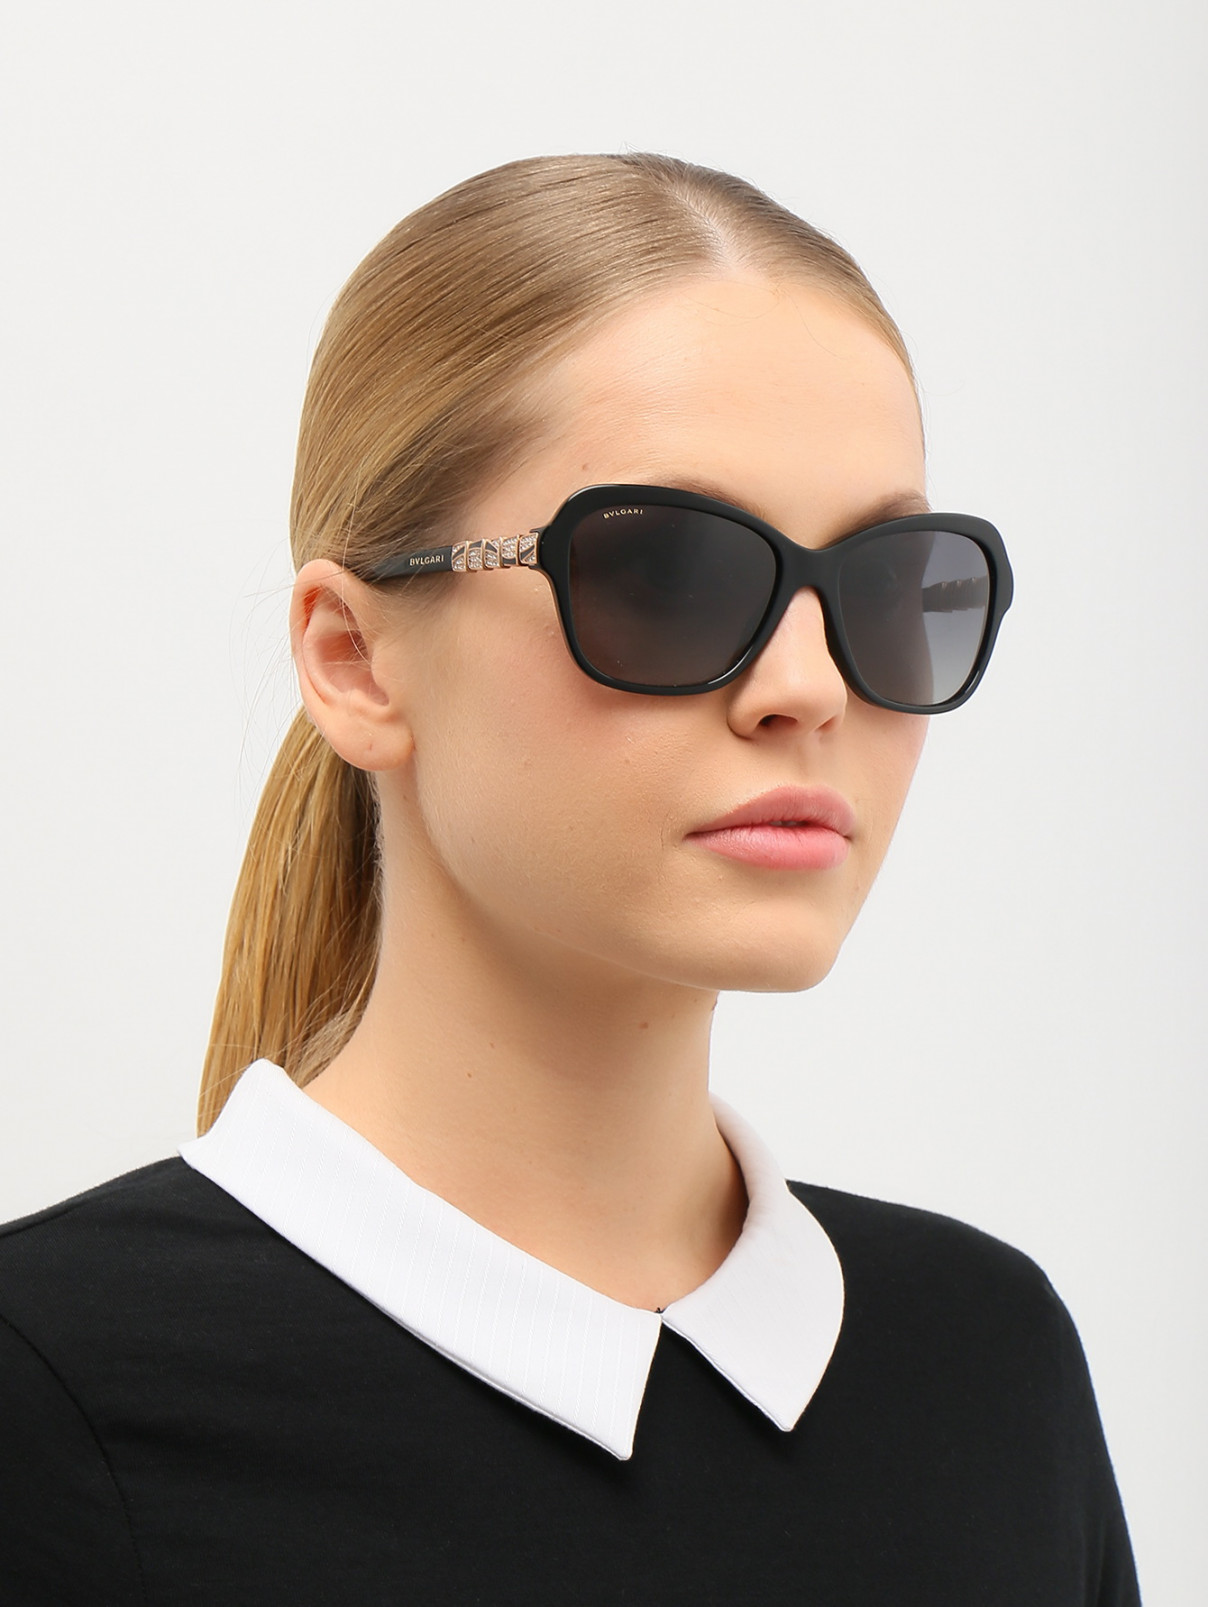 Солнцезащитные очки в пластиковой оправе с декоративными дужками с кристаллами BVLGARI  –  Модель Общий вид  – Цвет:  Черный